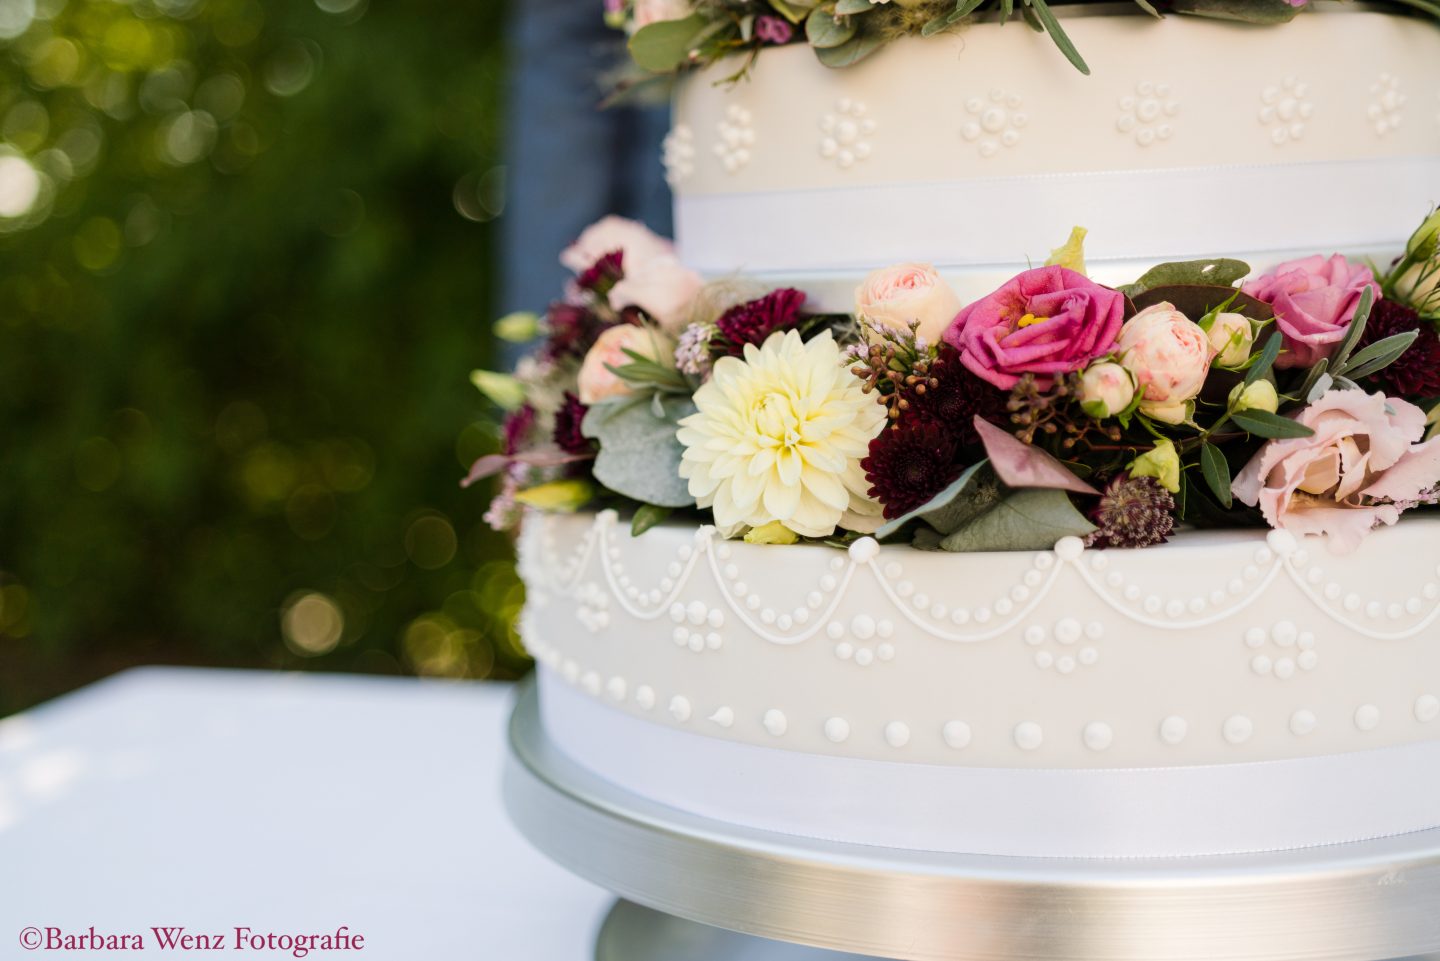 Großaufnahme einer weiß/cremefärbigen Hochzeitstorte, die mit echten Blumen in Creme- und Beeretönen geschmückt ist.